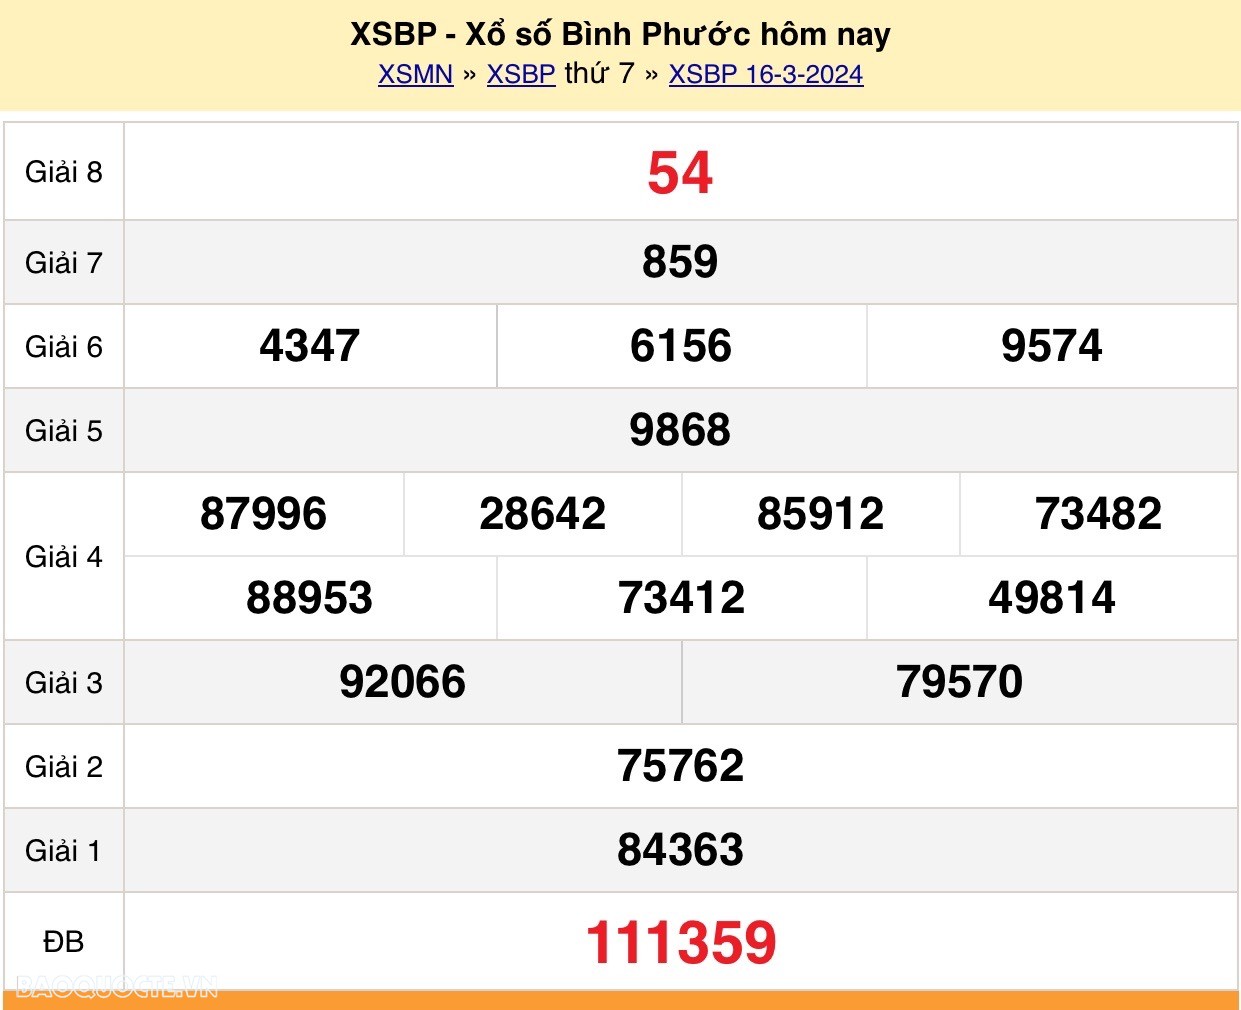 XSBP 16/3, Trực tiếp kết quả xổ số Bình Phước hôm nay 16/3/2024 - KQXSBP thứ 7